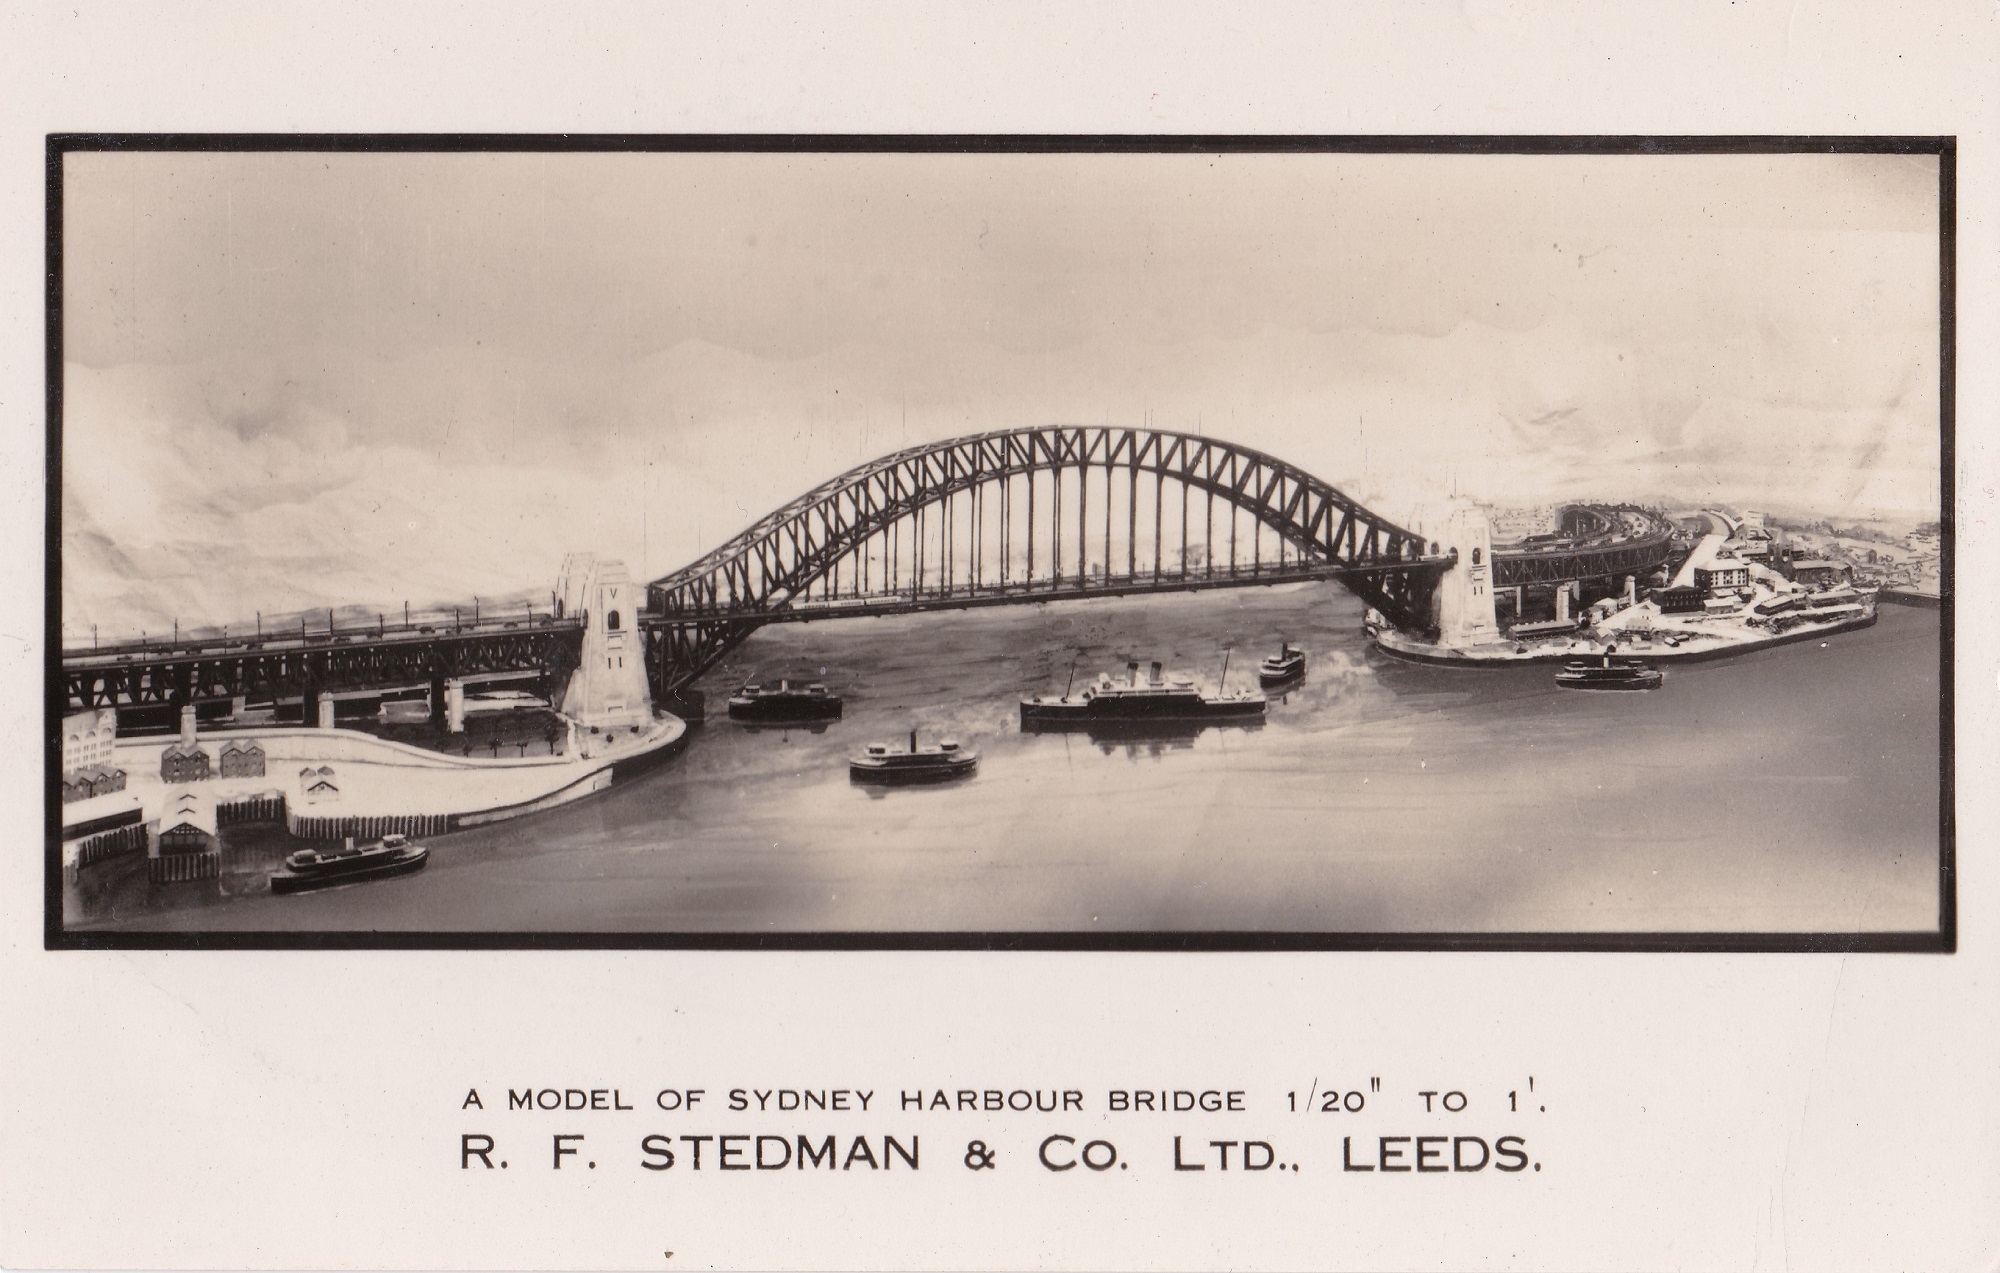 Stedman Sydney Harbour Bridhe model